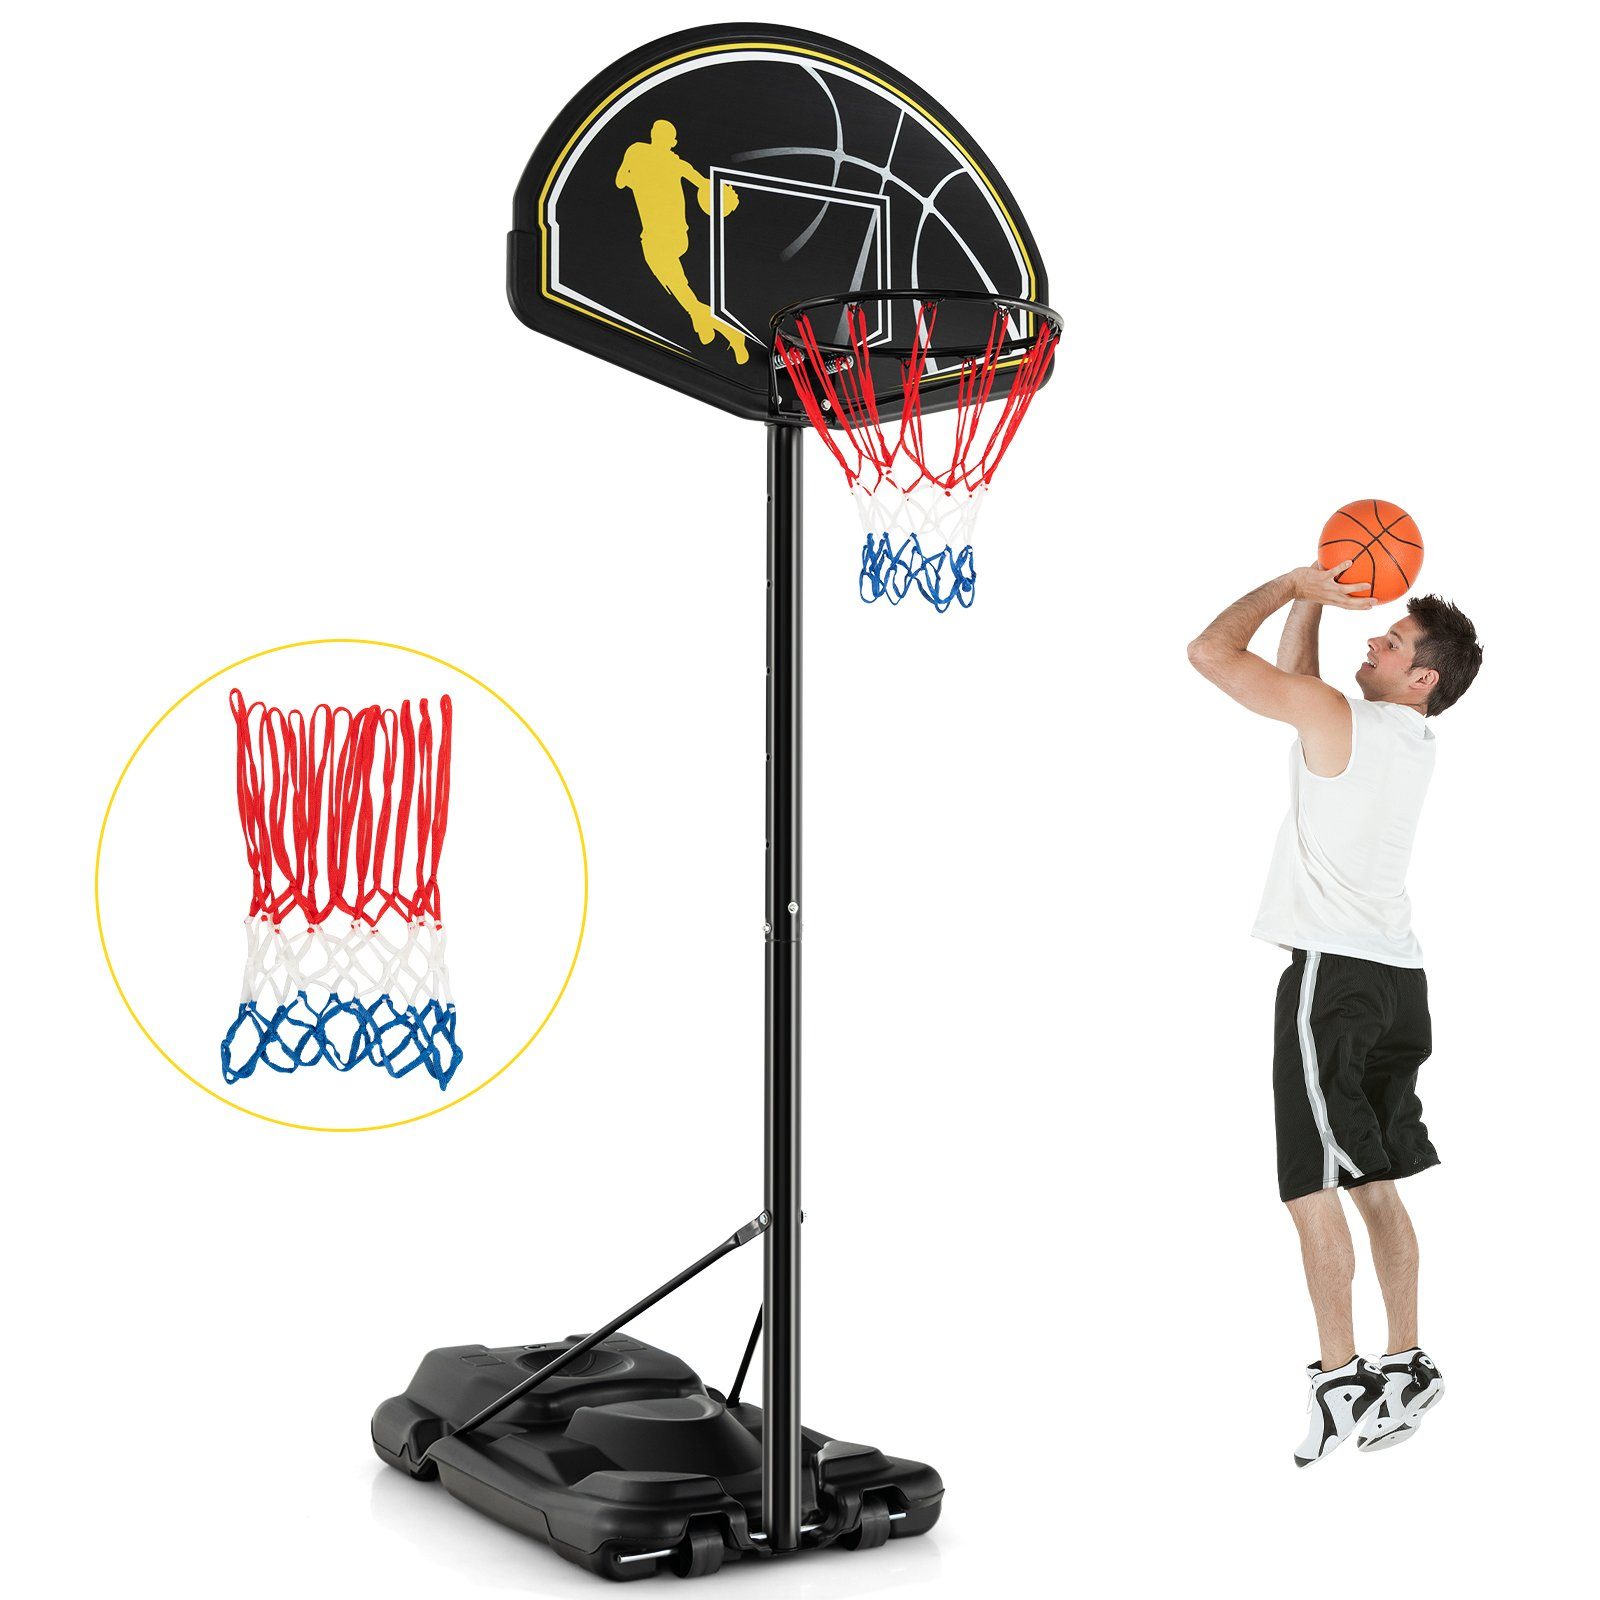 höhenverstellbar, inkl. COSTWAY Basketballständer, Netzen 130-305cm 2